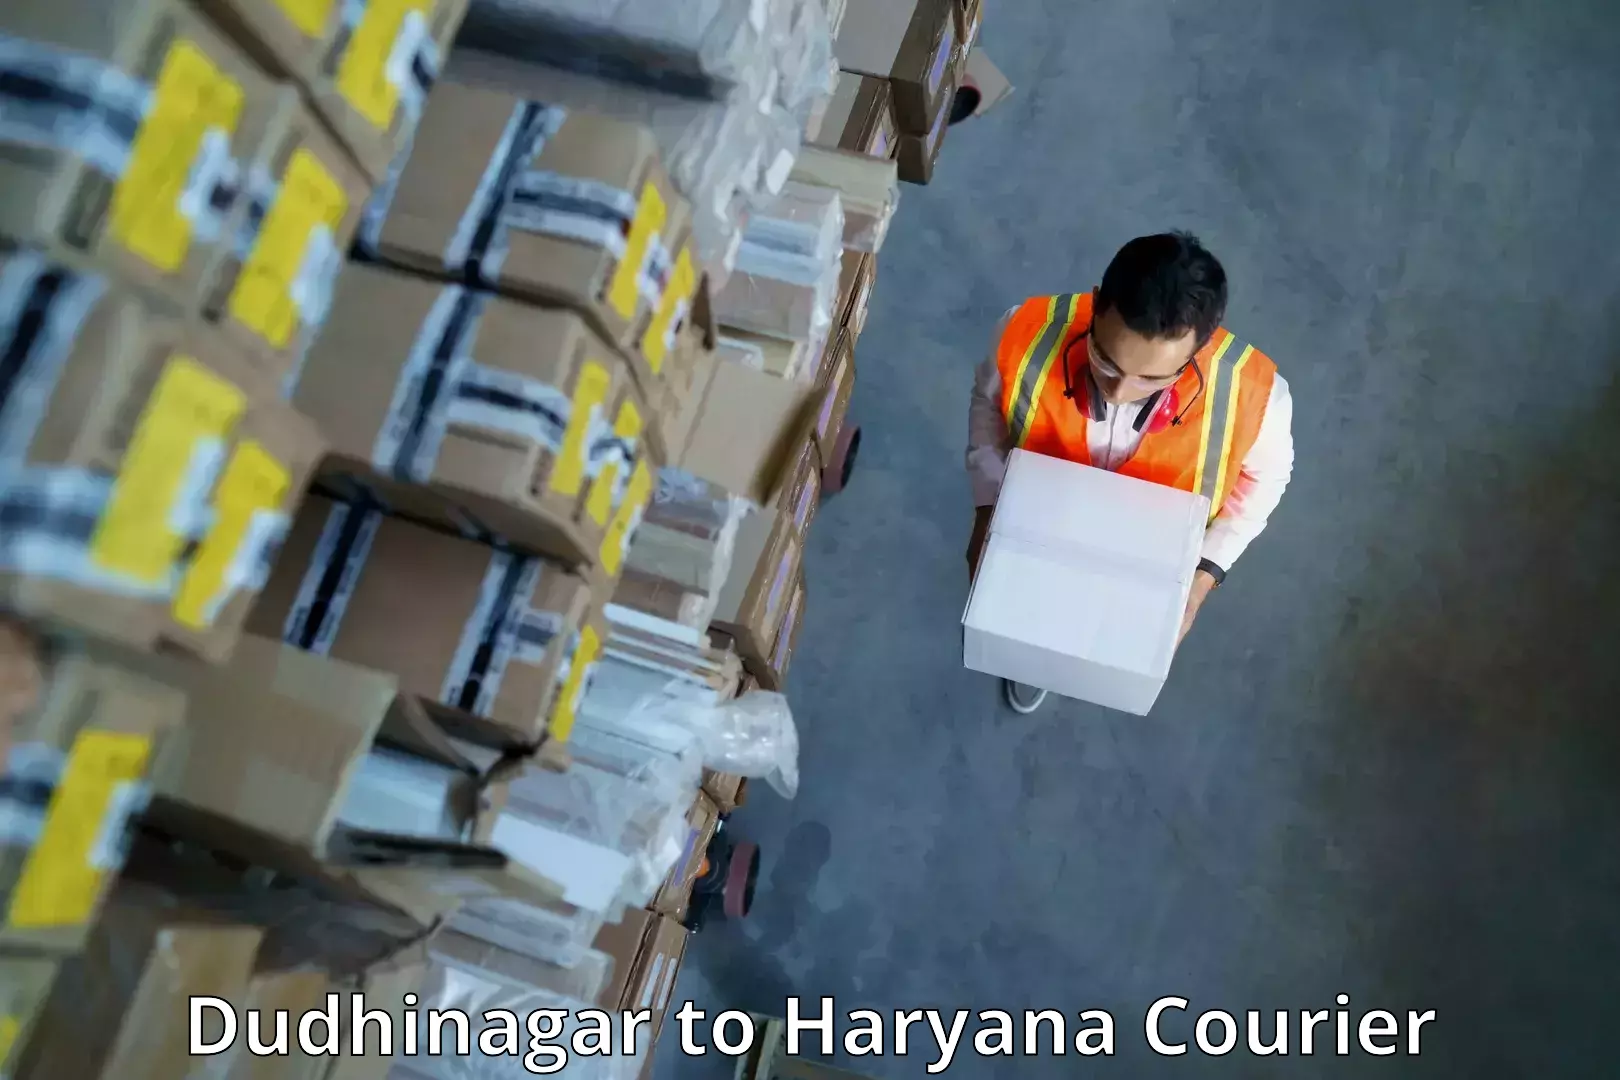 Smart logistics strategies Dudhinagar to Haryana